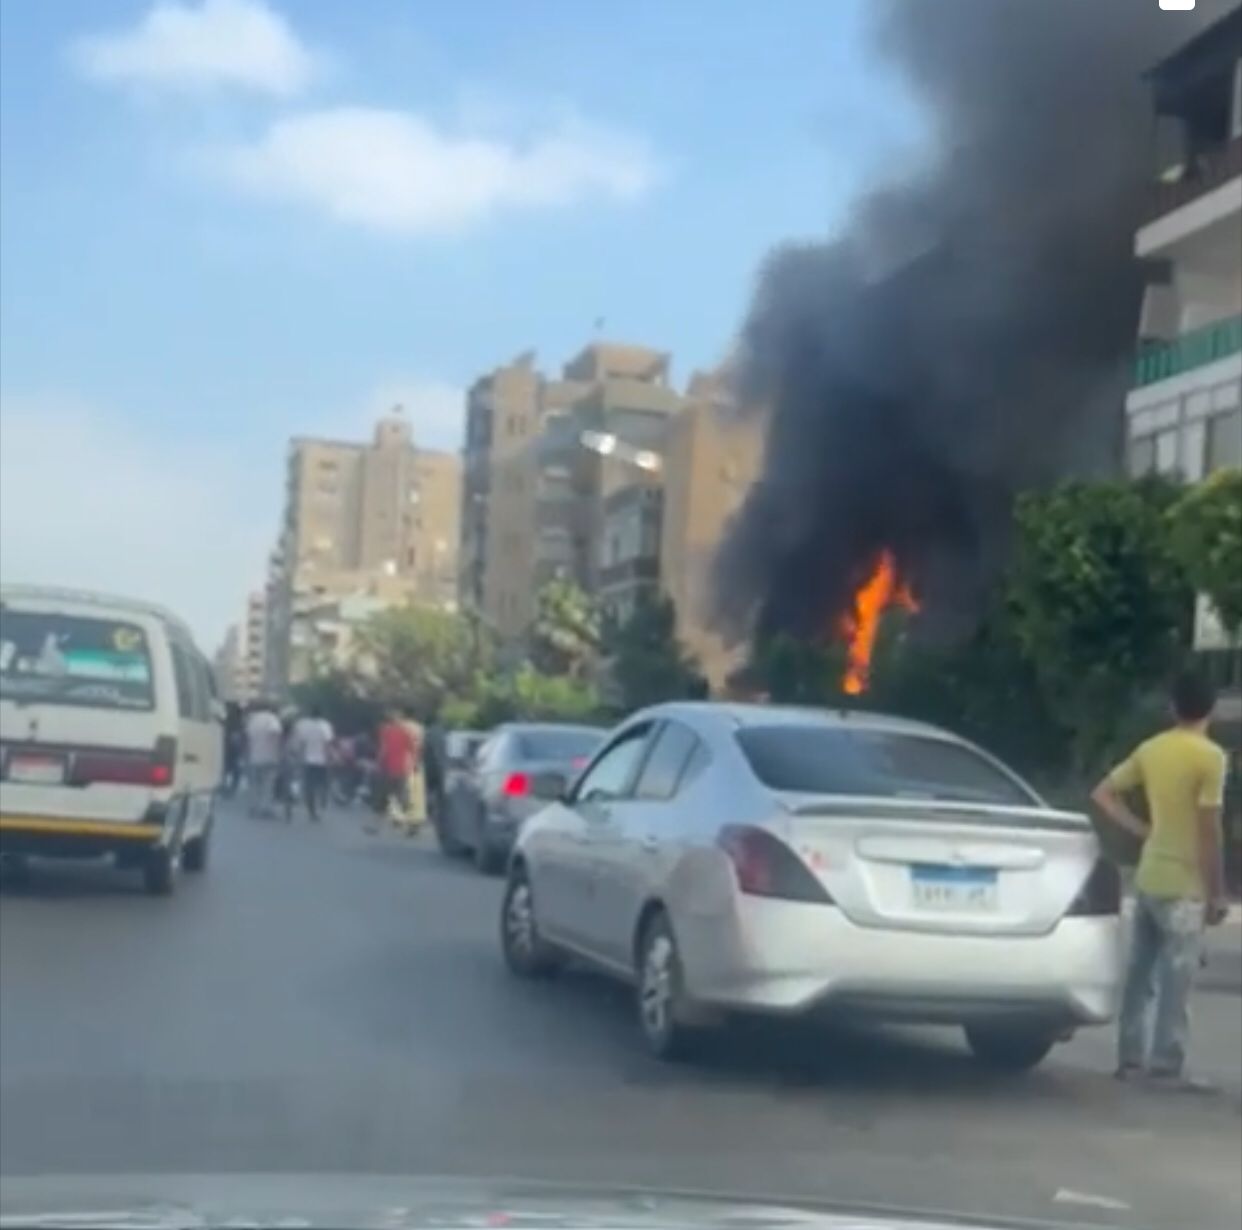 شلل مروري بشارع عباس العقاد إثر اندلاع حريق بمحل تجاري (صور)